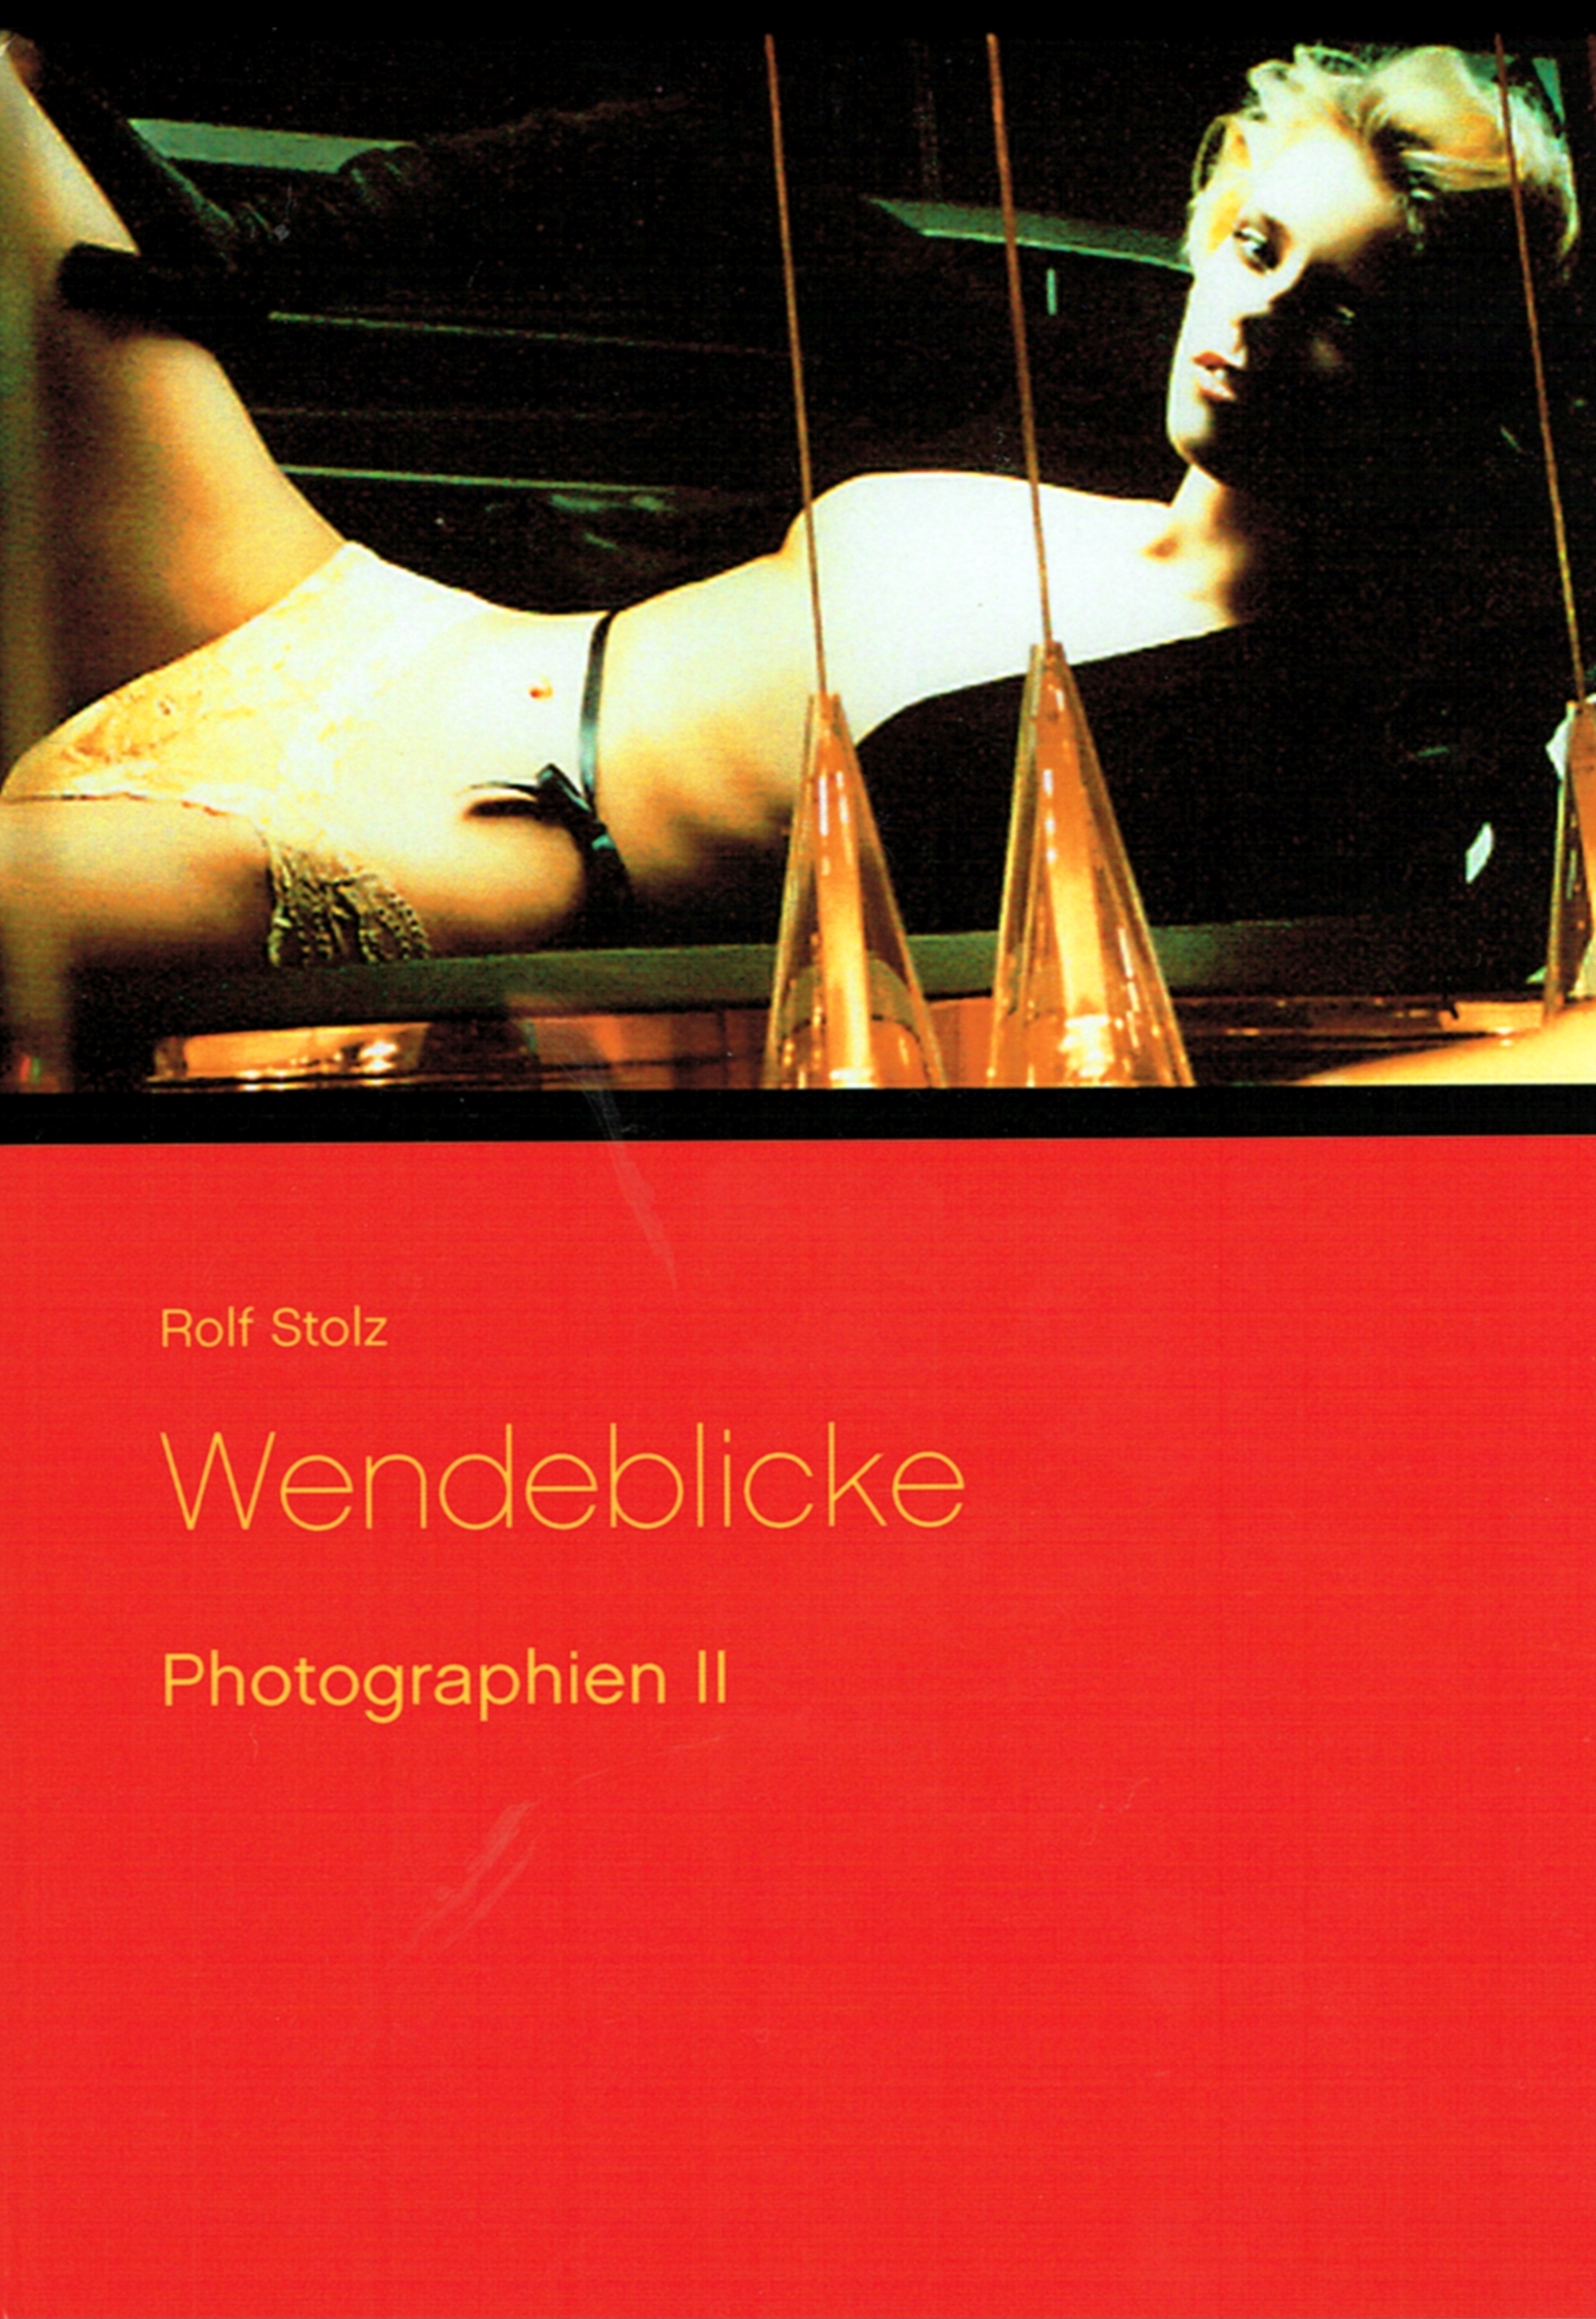 WENDEBLICKE - Photographien II